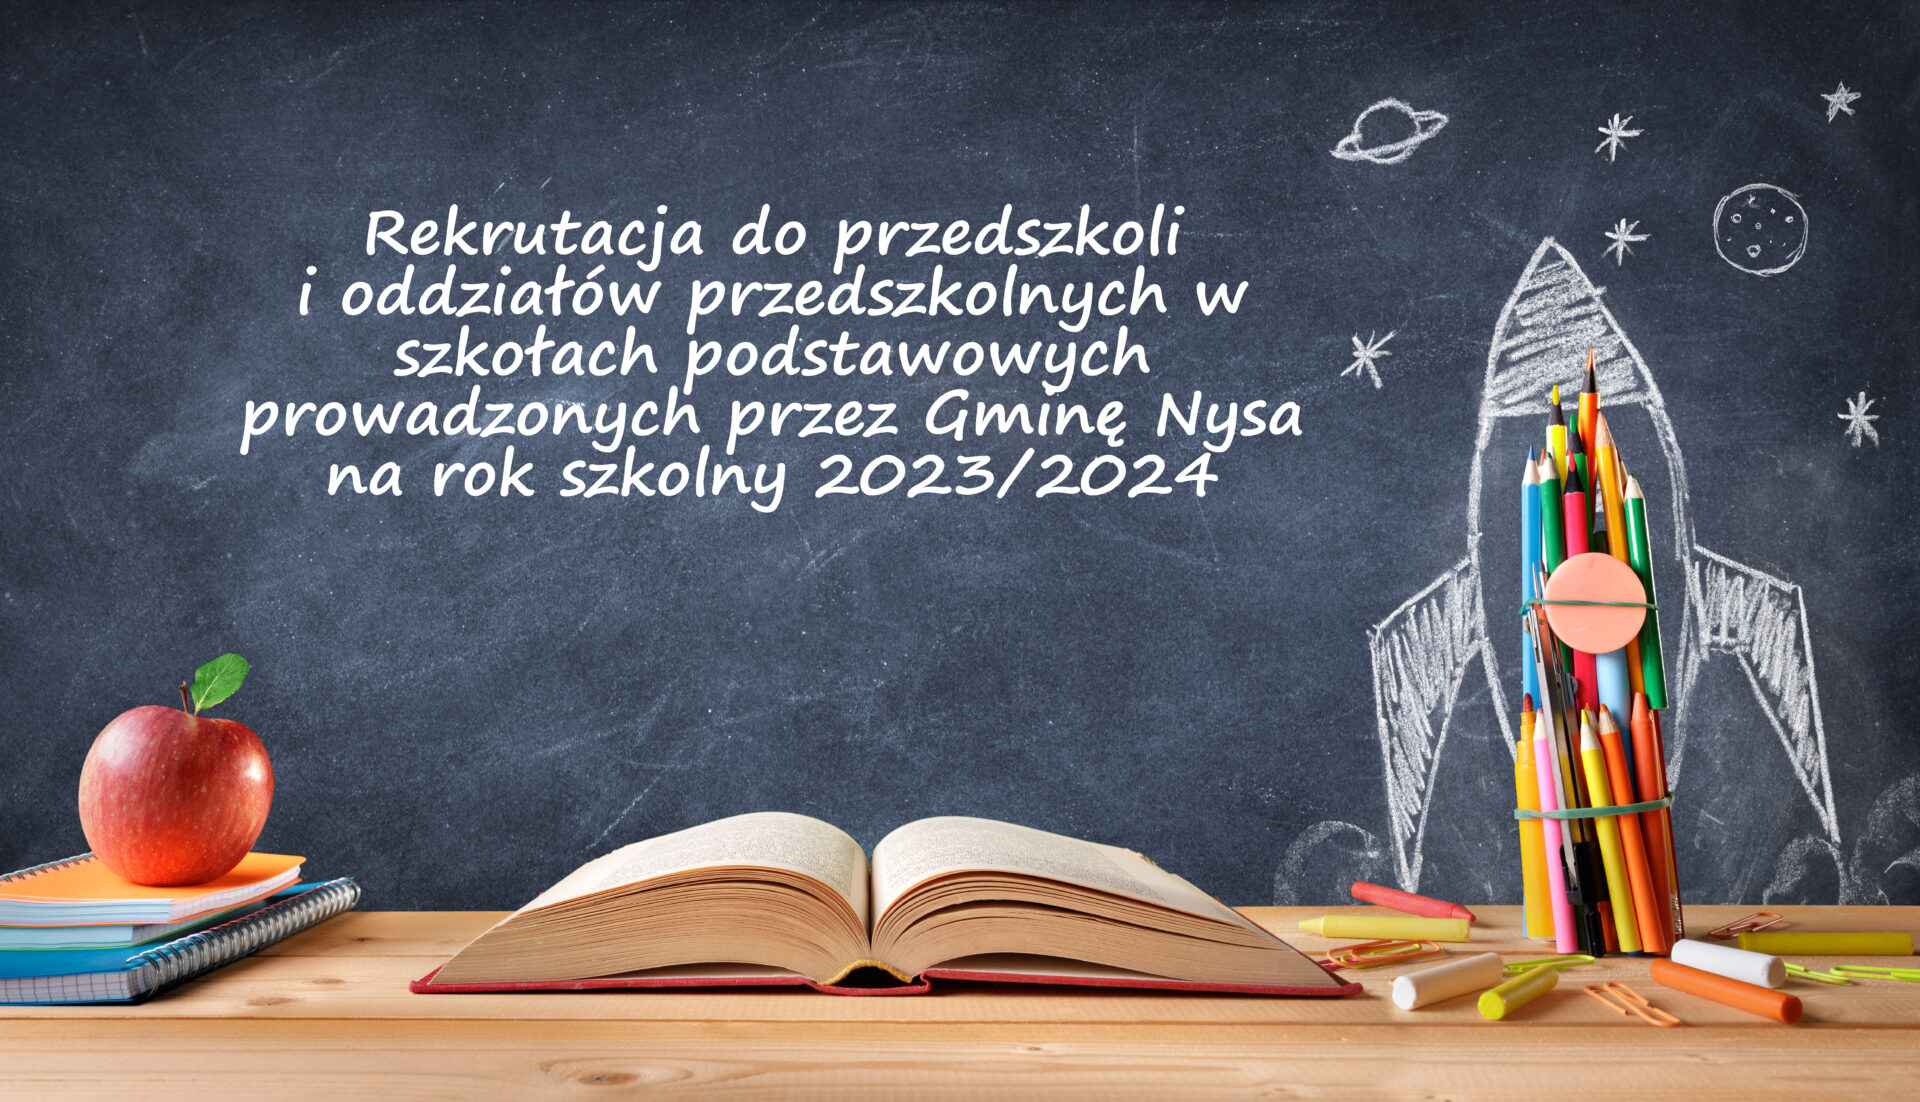 Rekrutacja do przedszkoli i oddziałów przedszkolnych w szkołach podstawowych prowadzonych przez Gminę Nysa na rok szkolny 2023/2024